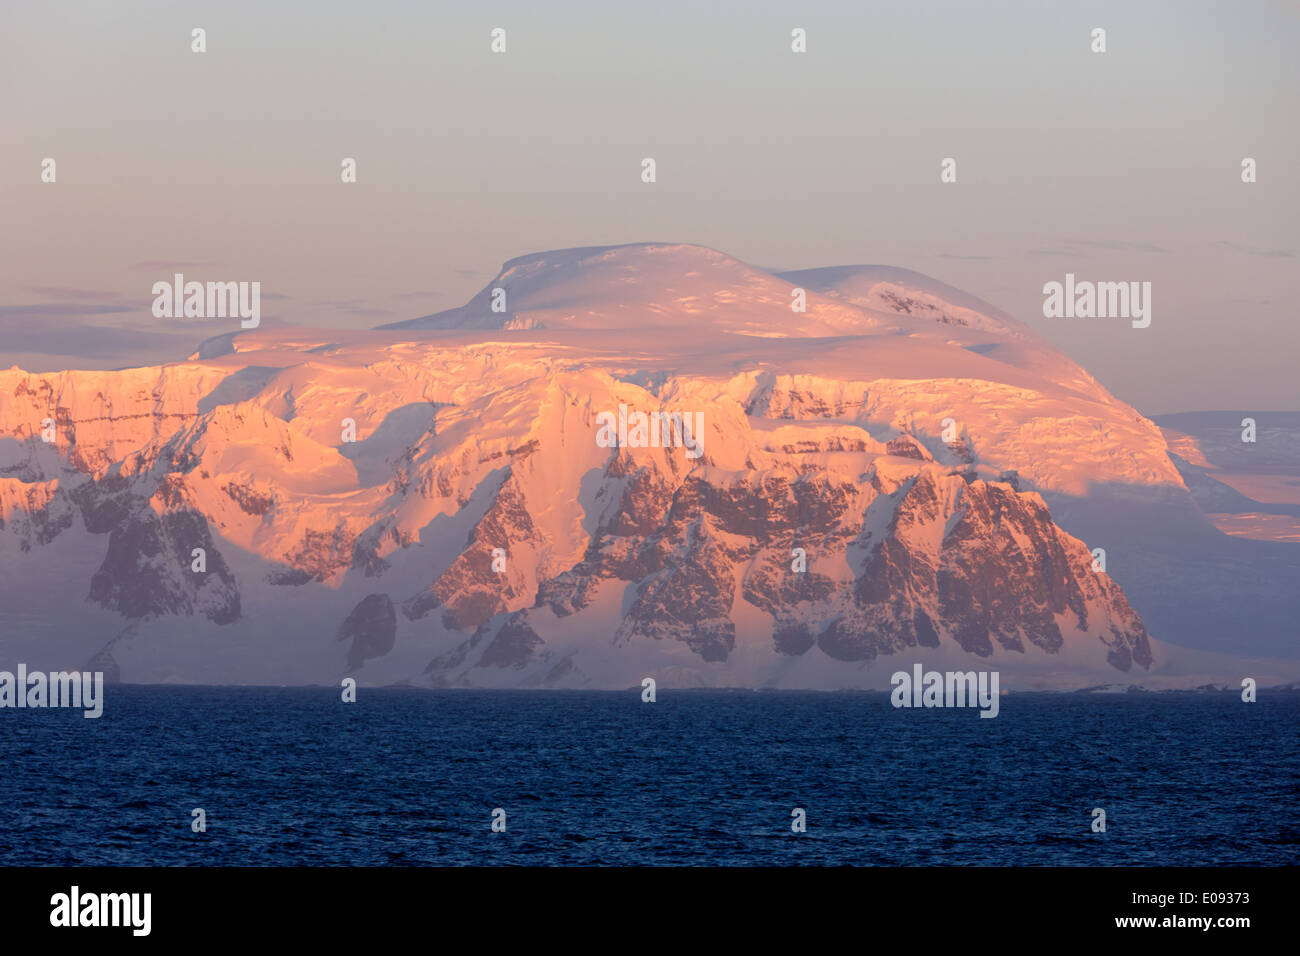 Coucher de soleil sur les montagnes de la péninsule antarctique Antarctique kiev Banque D'Images